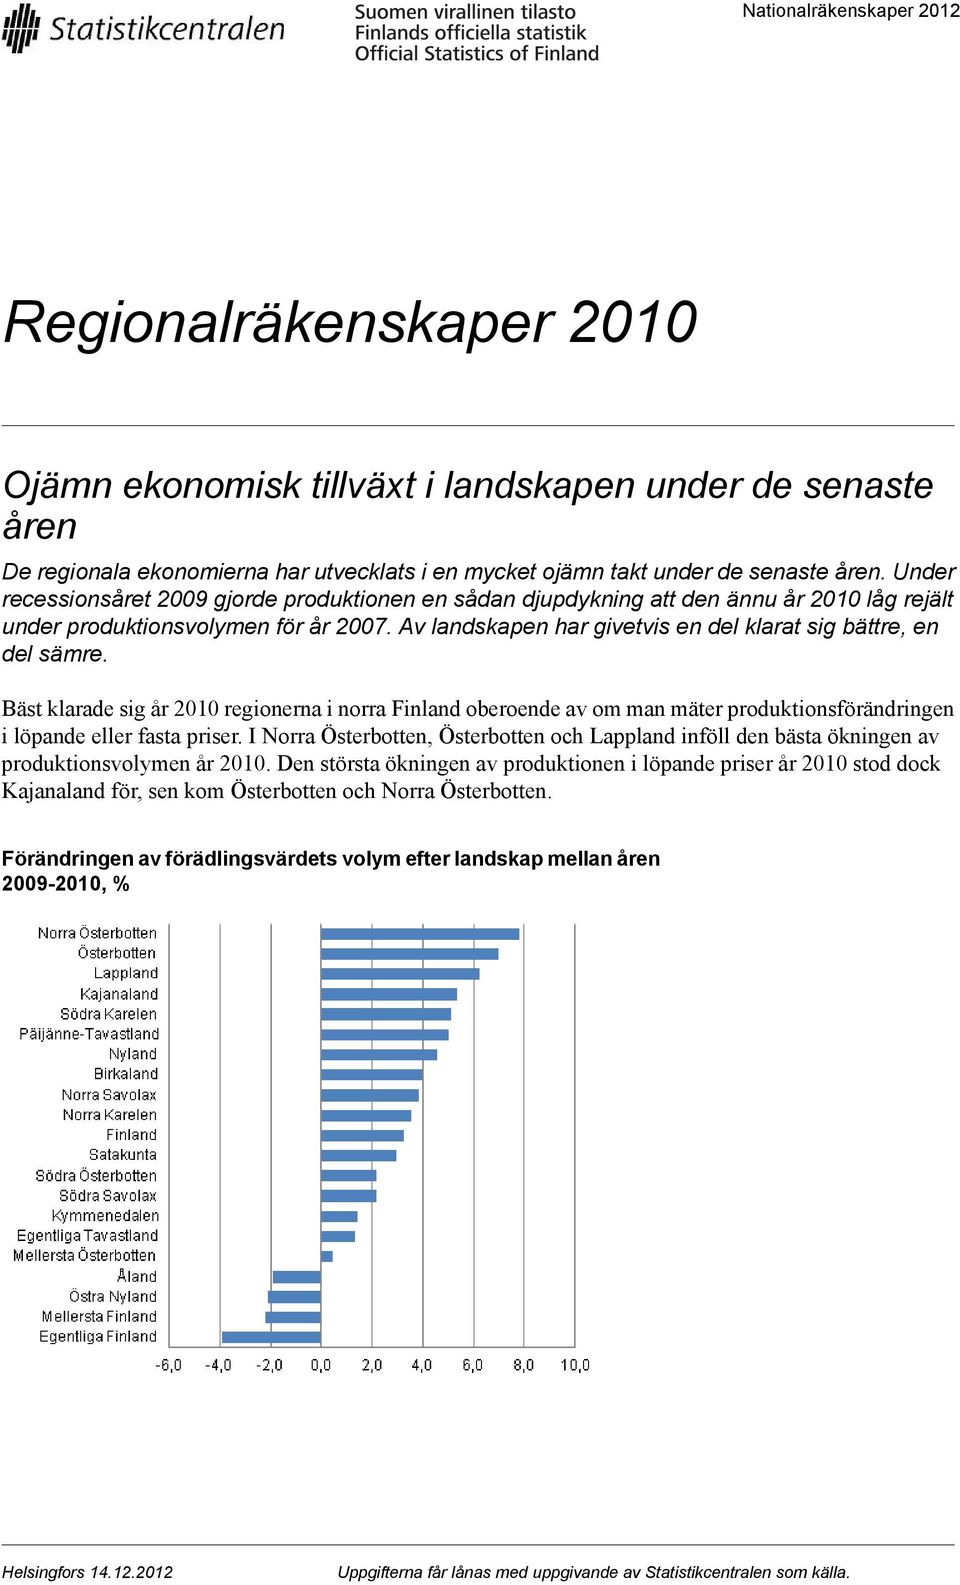 Av landskapen har givetvis en del klarat sig bättre, en del sämre. Bäst klarade sig år 2010 regionerna i norra Finland oberoende av om man mäter produktionsförändringen i löpande eller fasta priser.